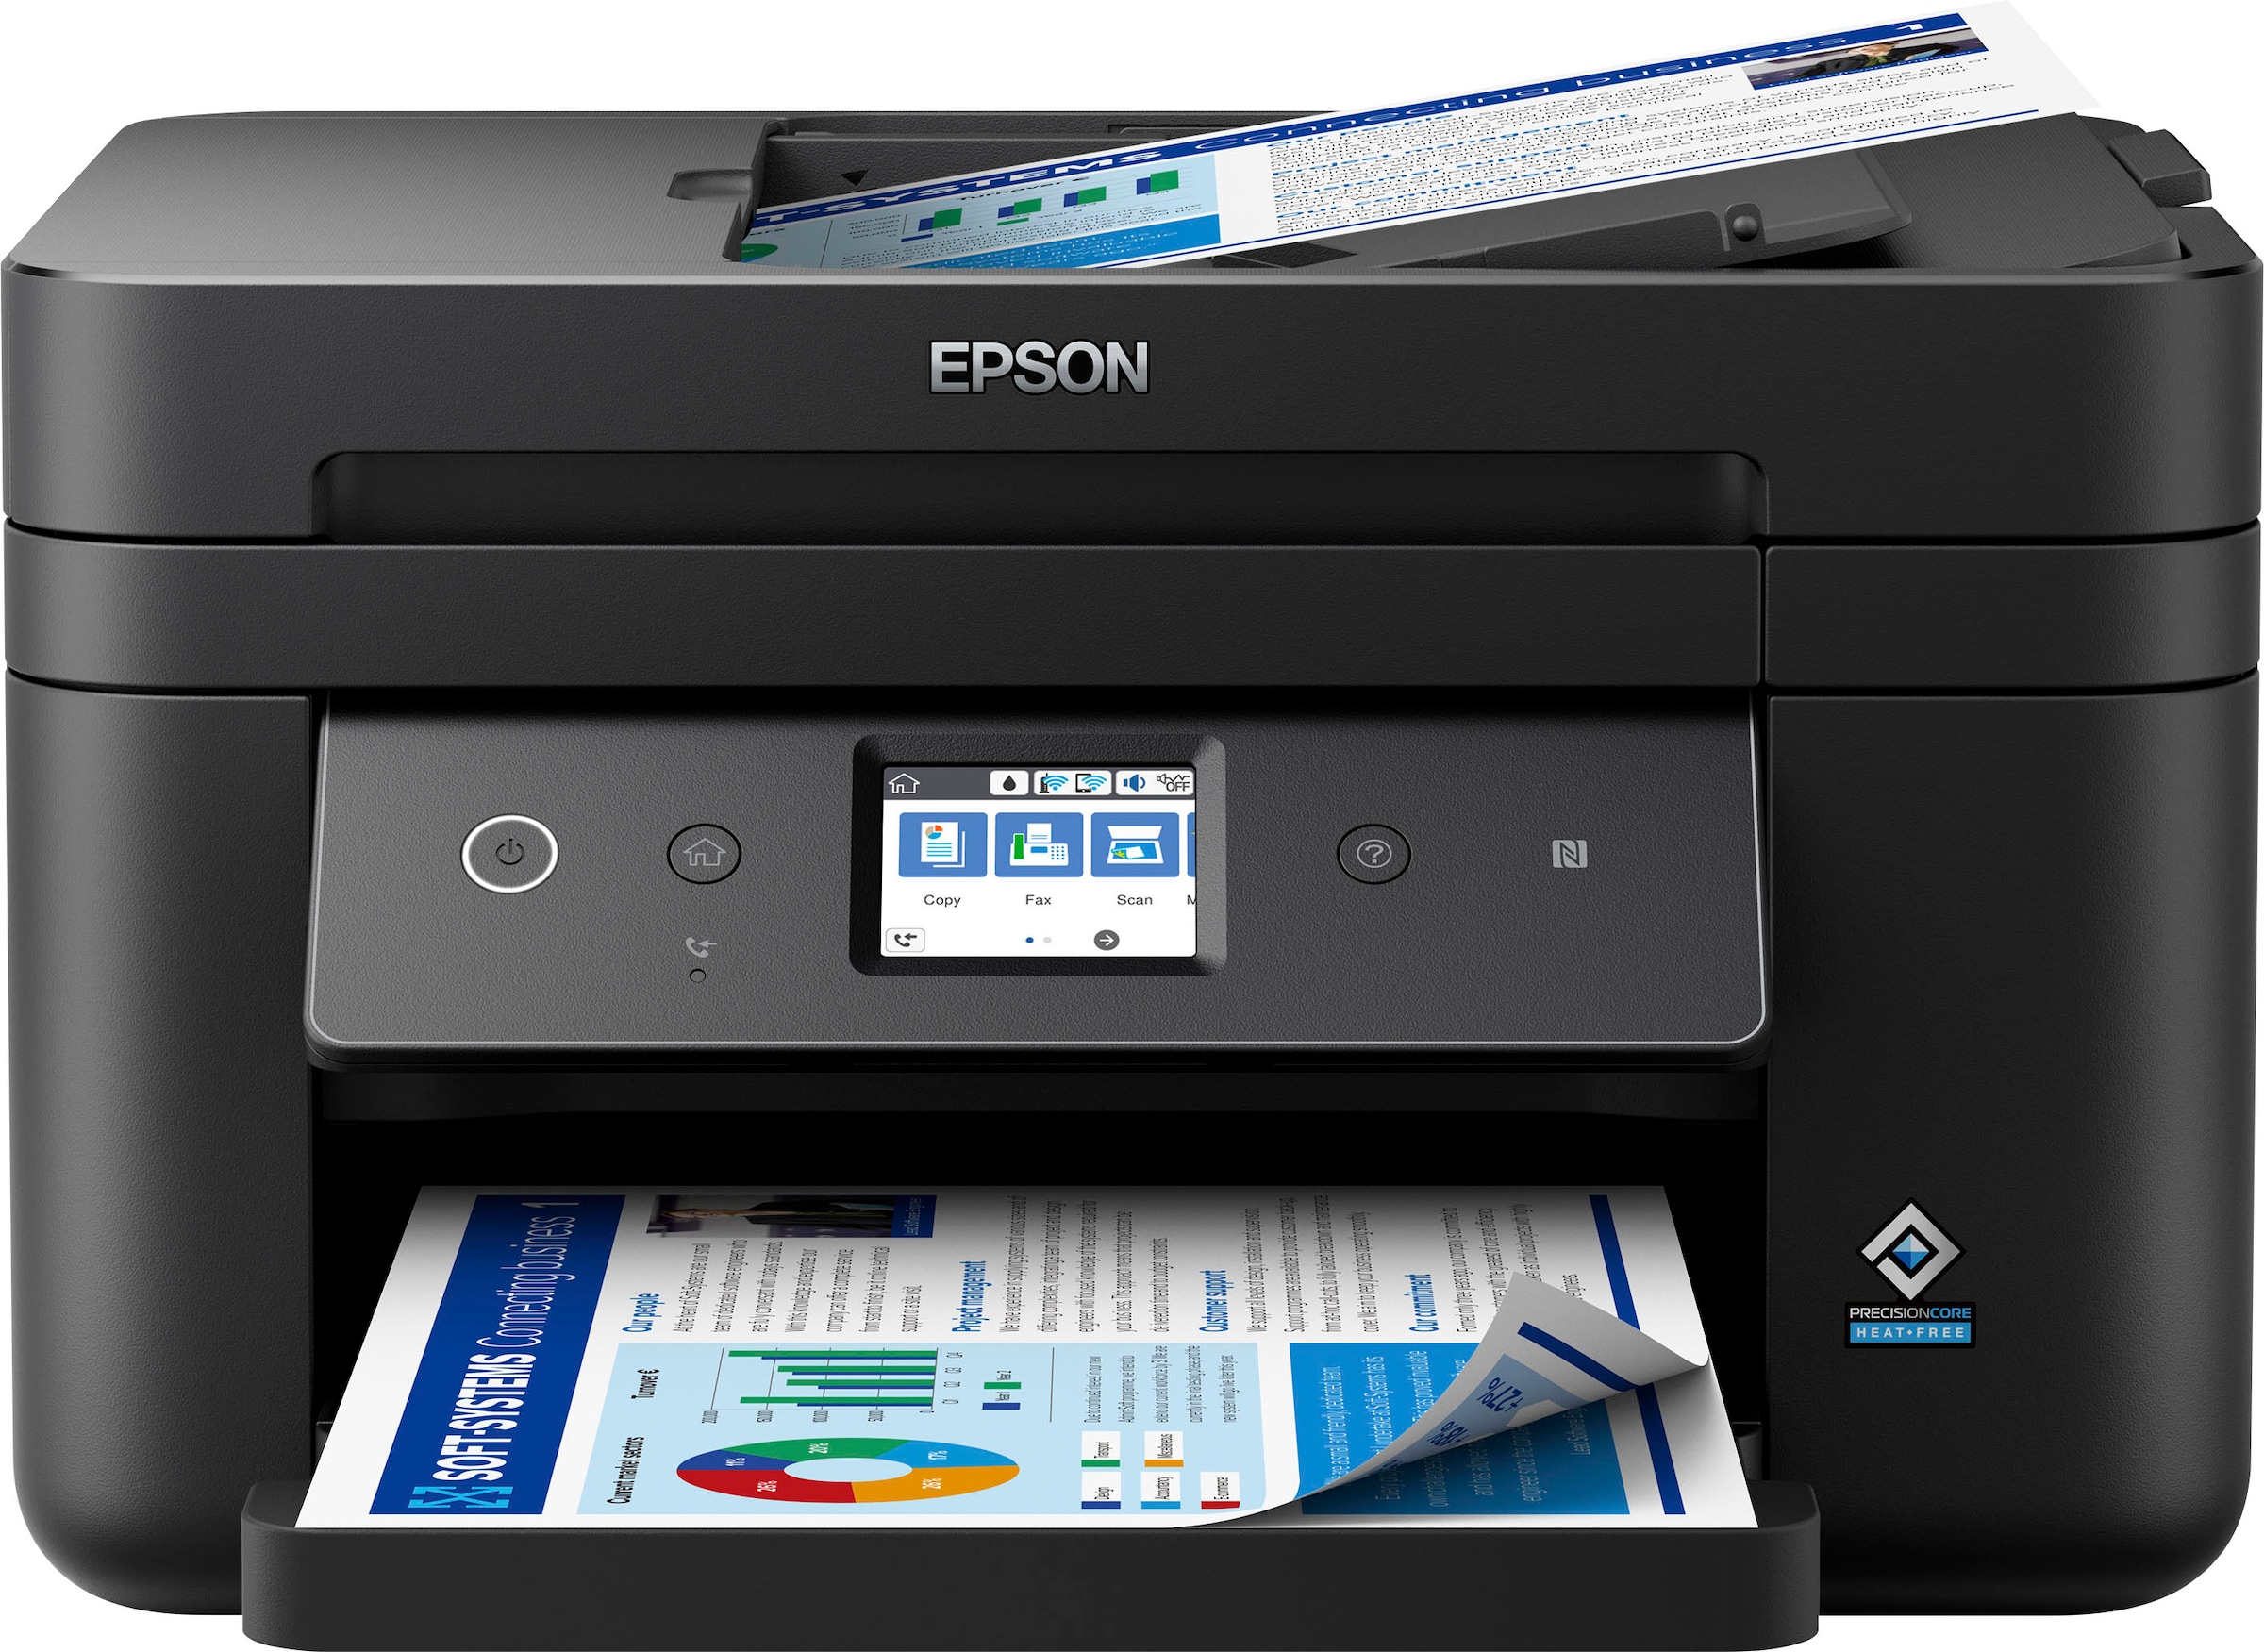 Epson Multifunktionsdrucker Workforce Wf 2880dwf Jetzt Bei Otto 3884